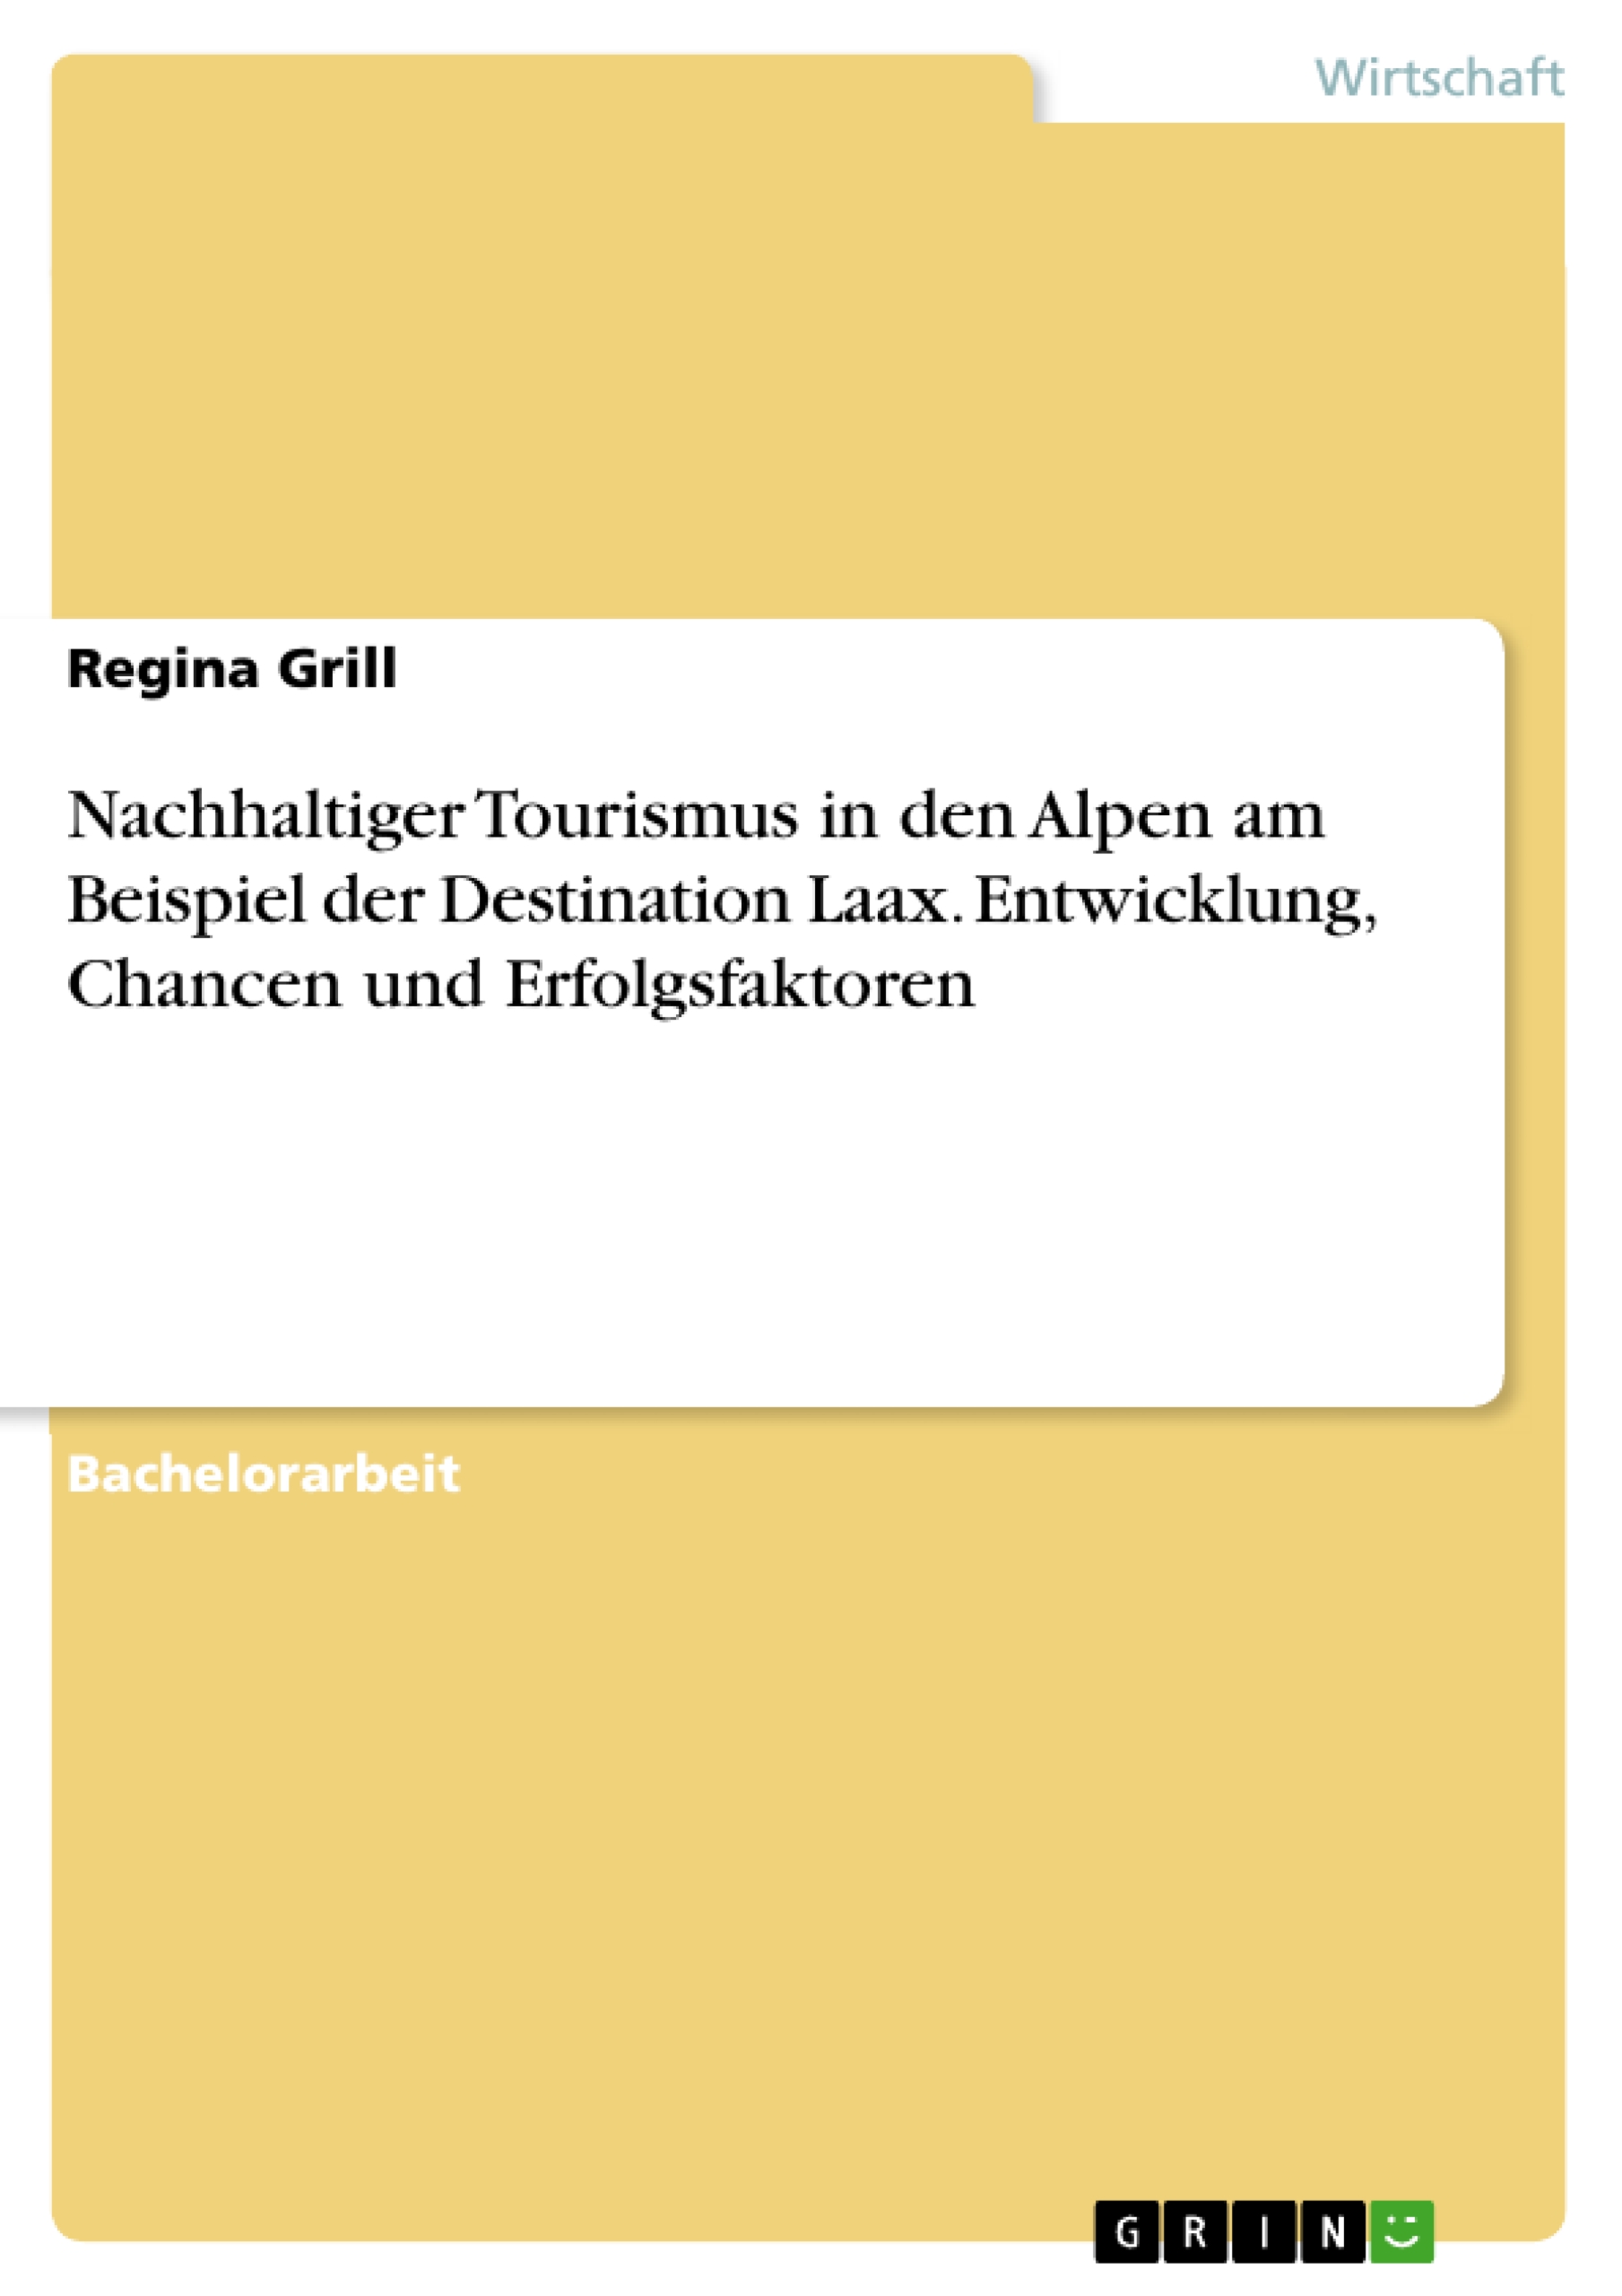 Nachhaltiger Tourismus in den Alpen am Beispiel der Destination Laax. Entwicklung, Chancen und Erfolgsfaktoren